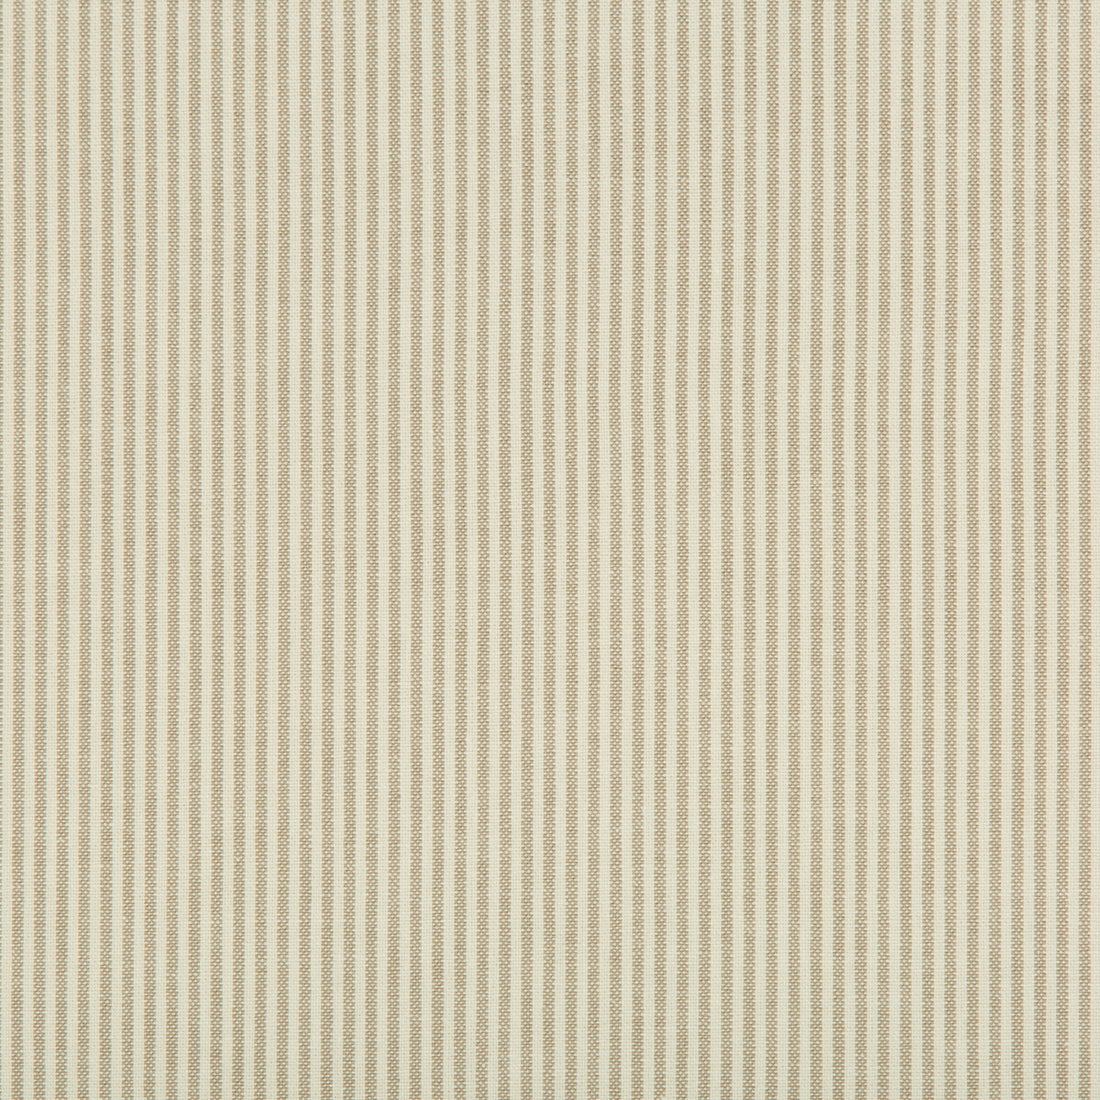 Kravet Basics fabric in 35199-16 color - pattern 35199.16.0 - by Kravet Basics